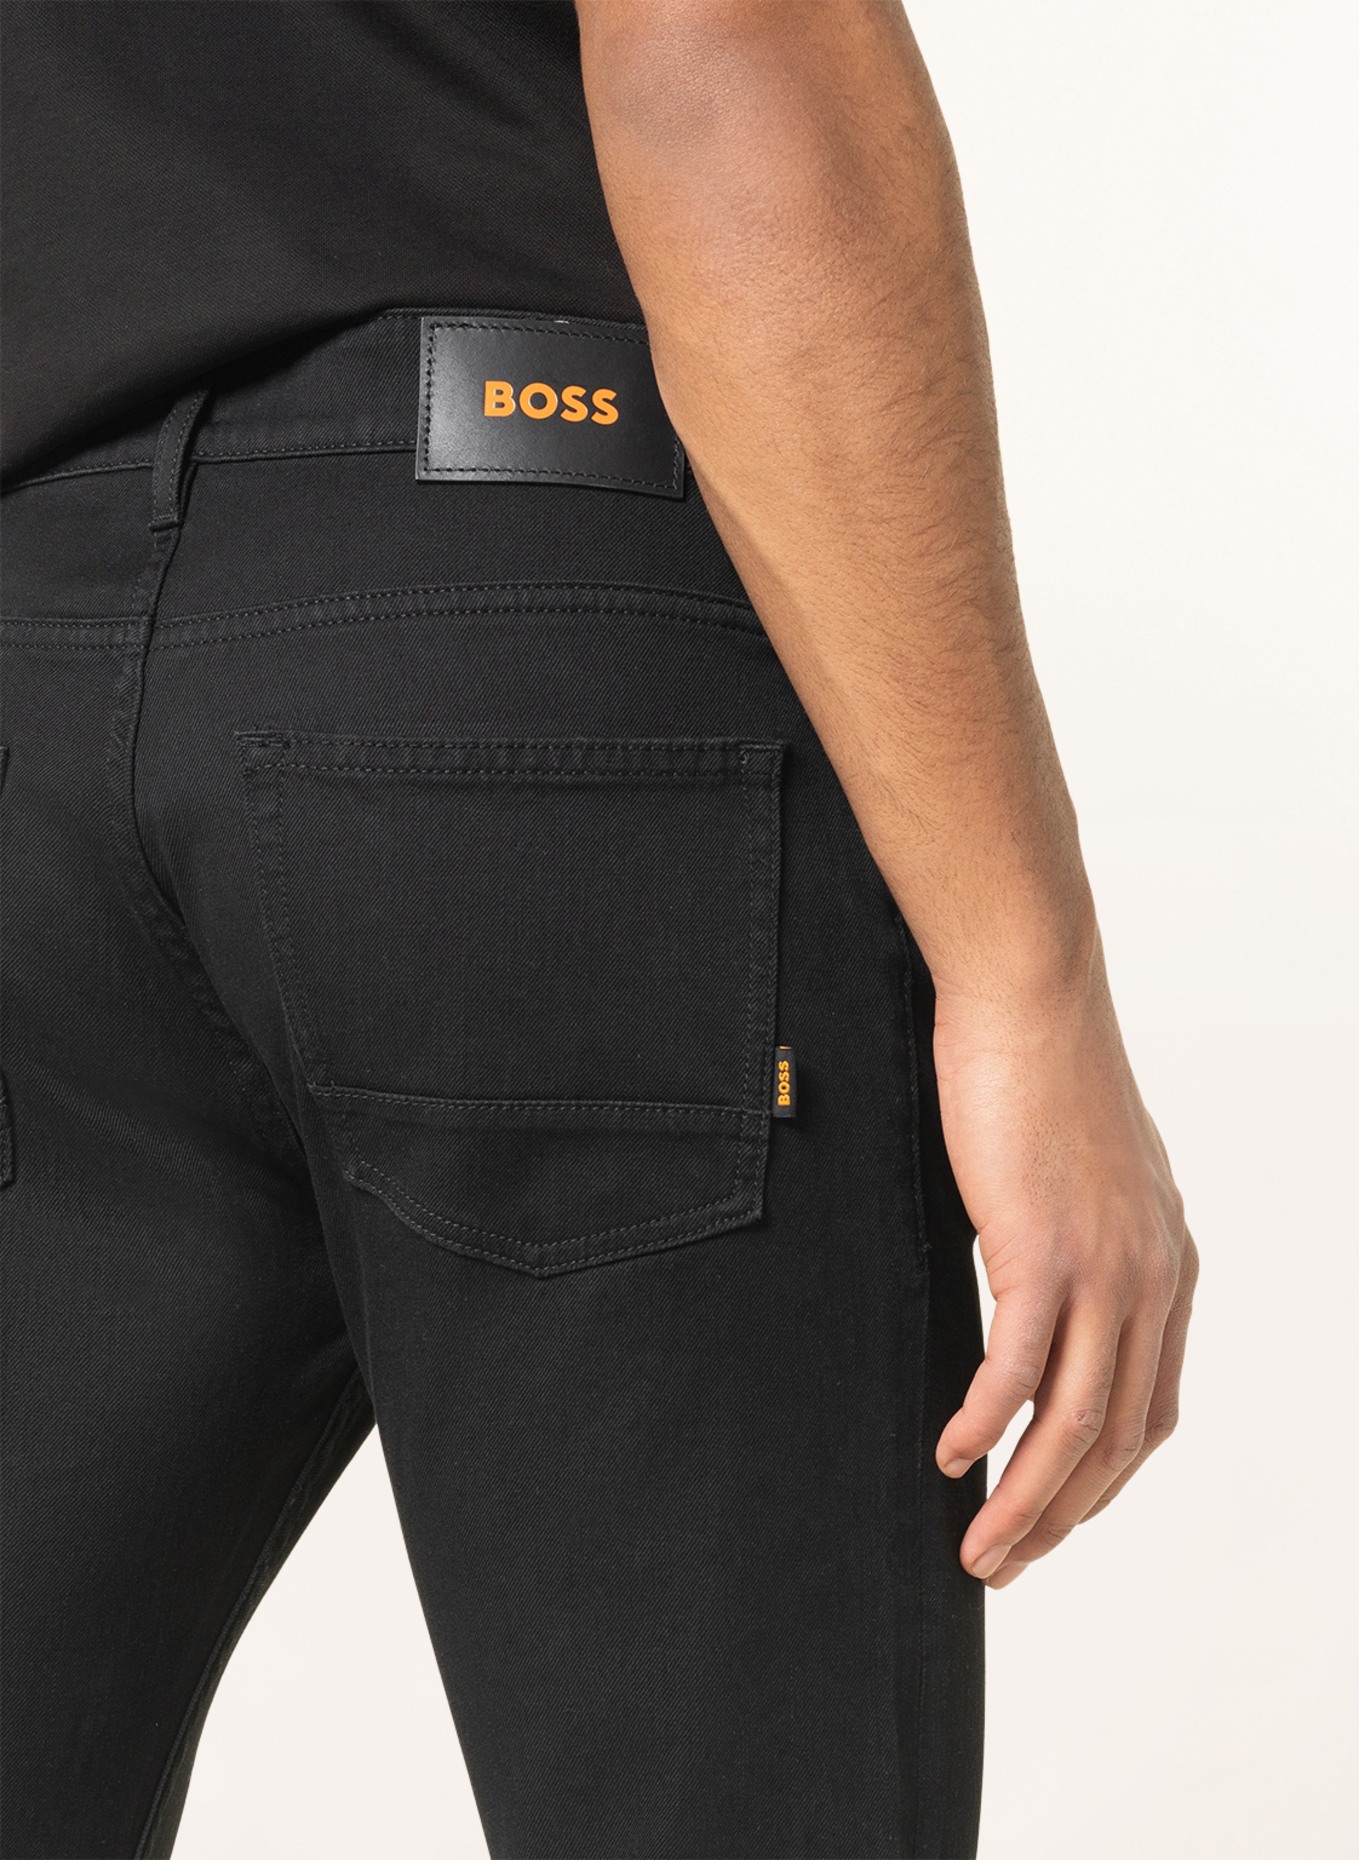 BOSS Jeans DELAWARE Slim Fit, Farbe: 002 BLACK (Bild 5)